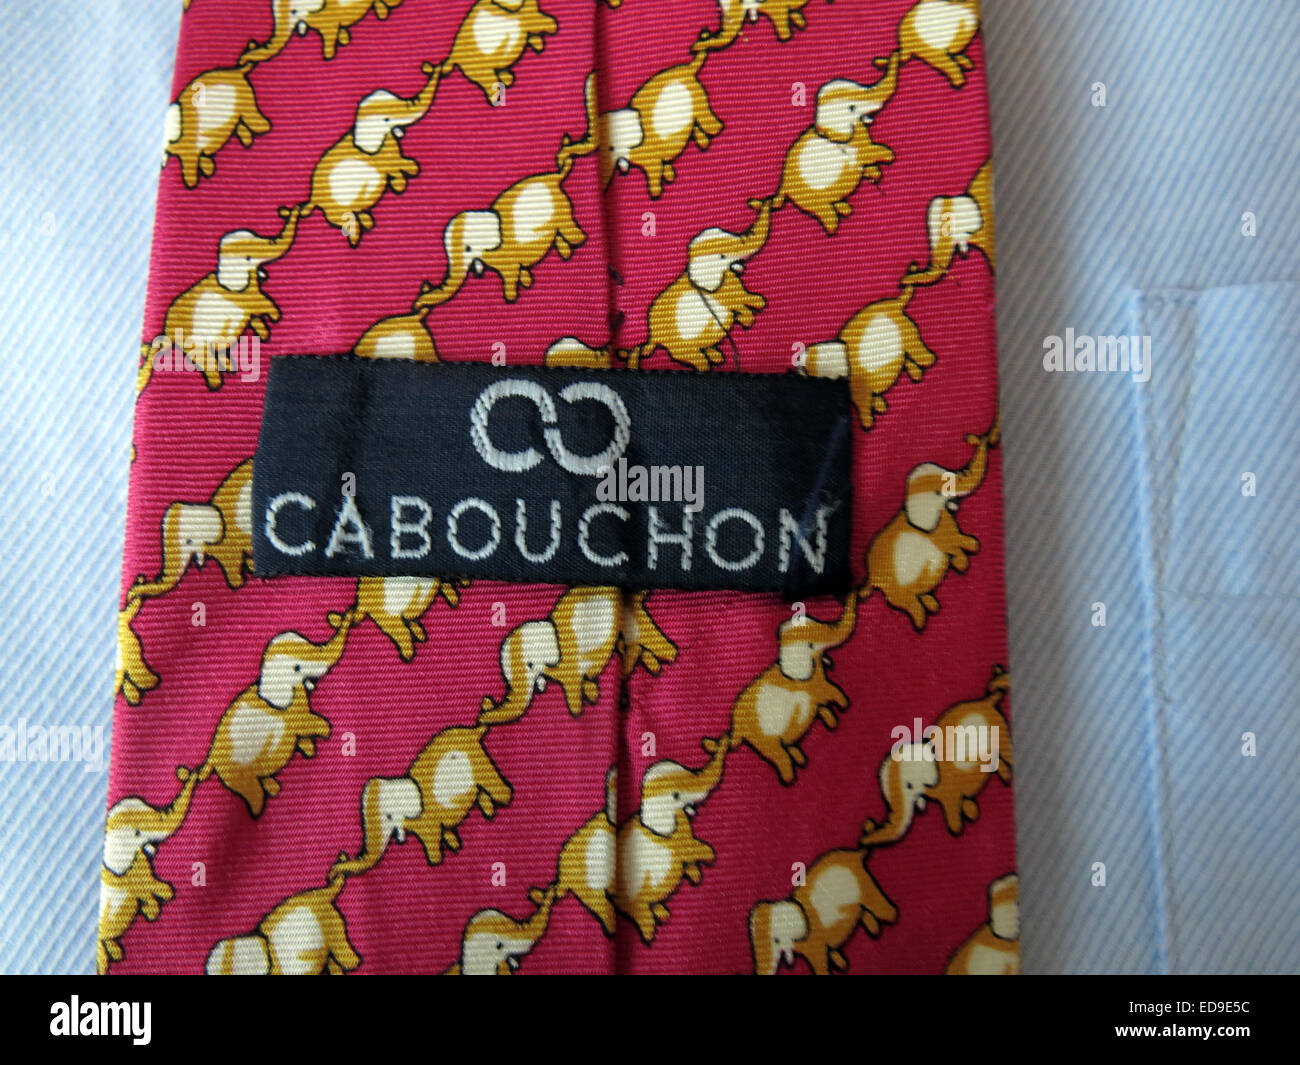 L'éléphant d'Carbouchon intéressant, homme neckware vintage cravate en soie Banque D'Images